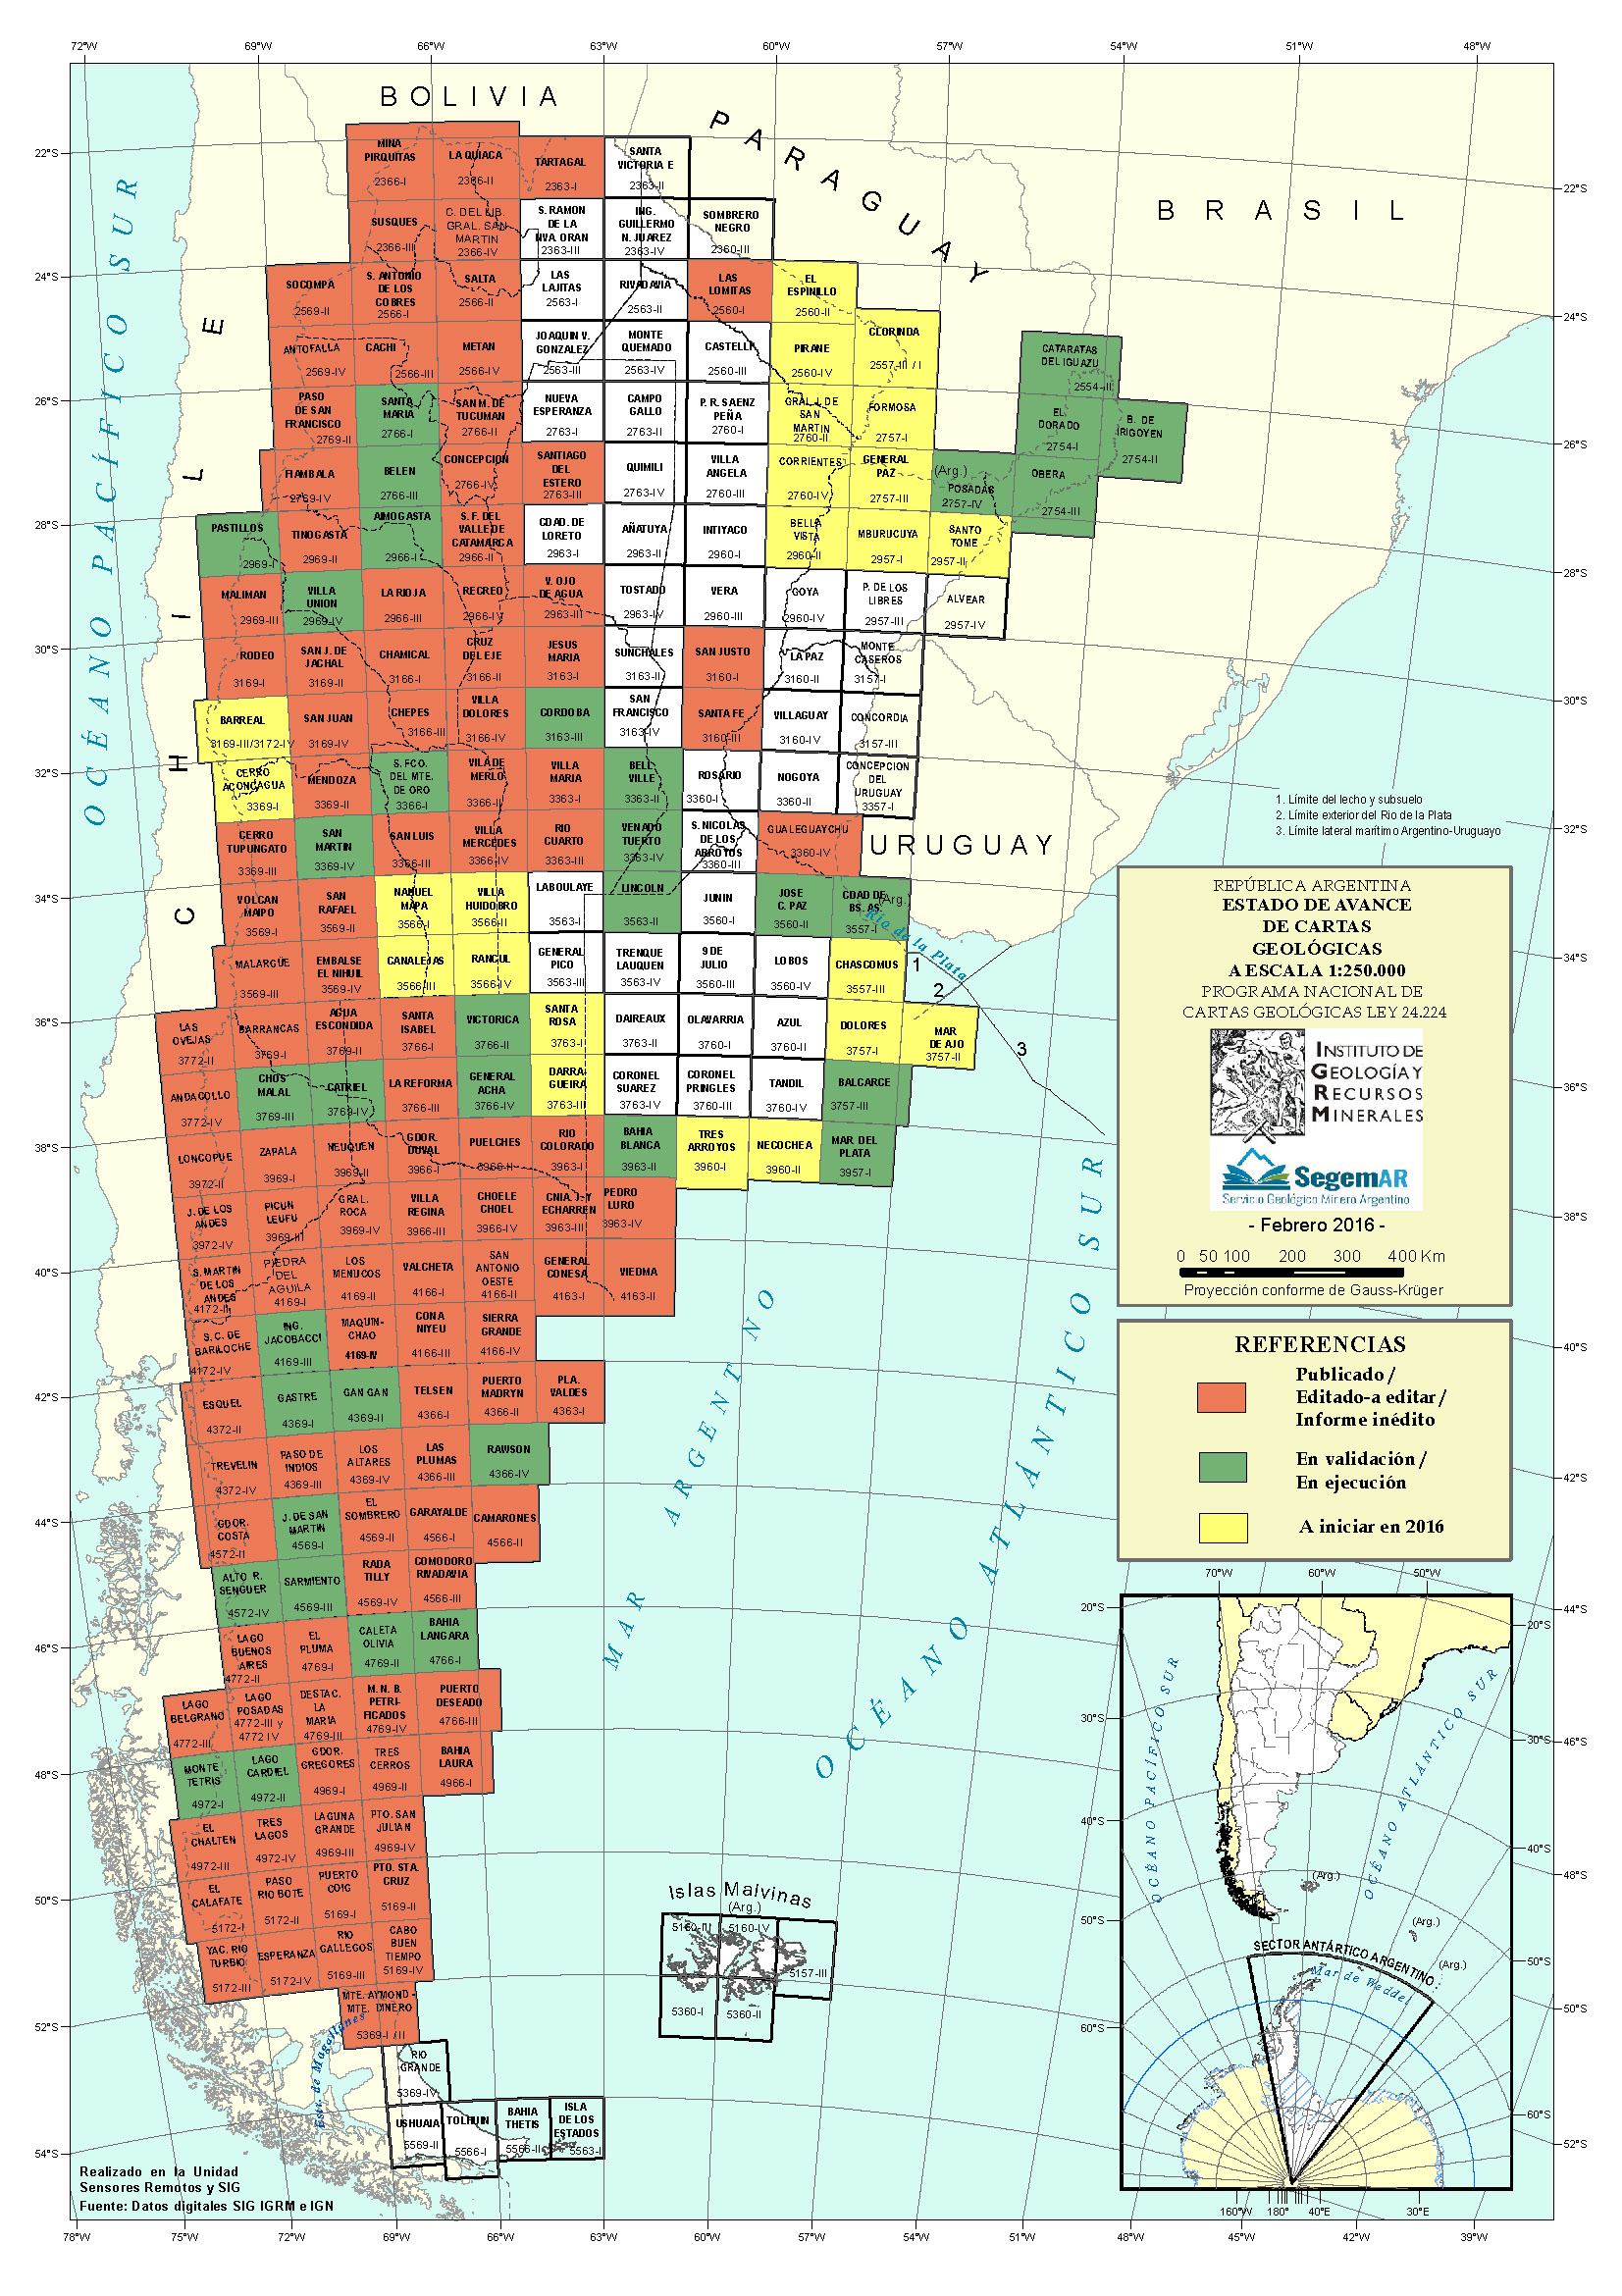 Estado actual del Programa Nacional de Cartas Geológicas y Temáticas de la República Argentina, en escala 1:250.000